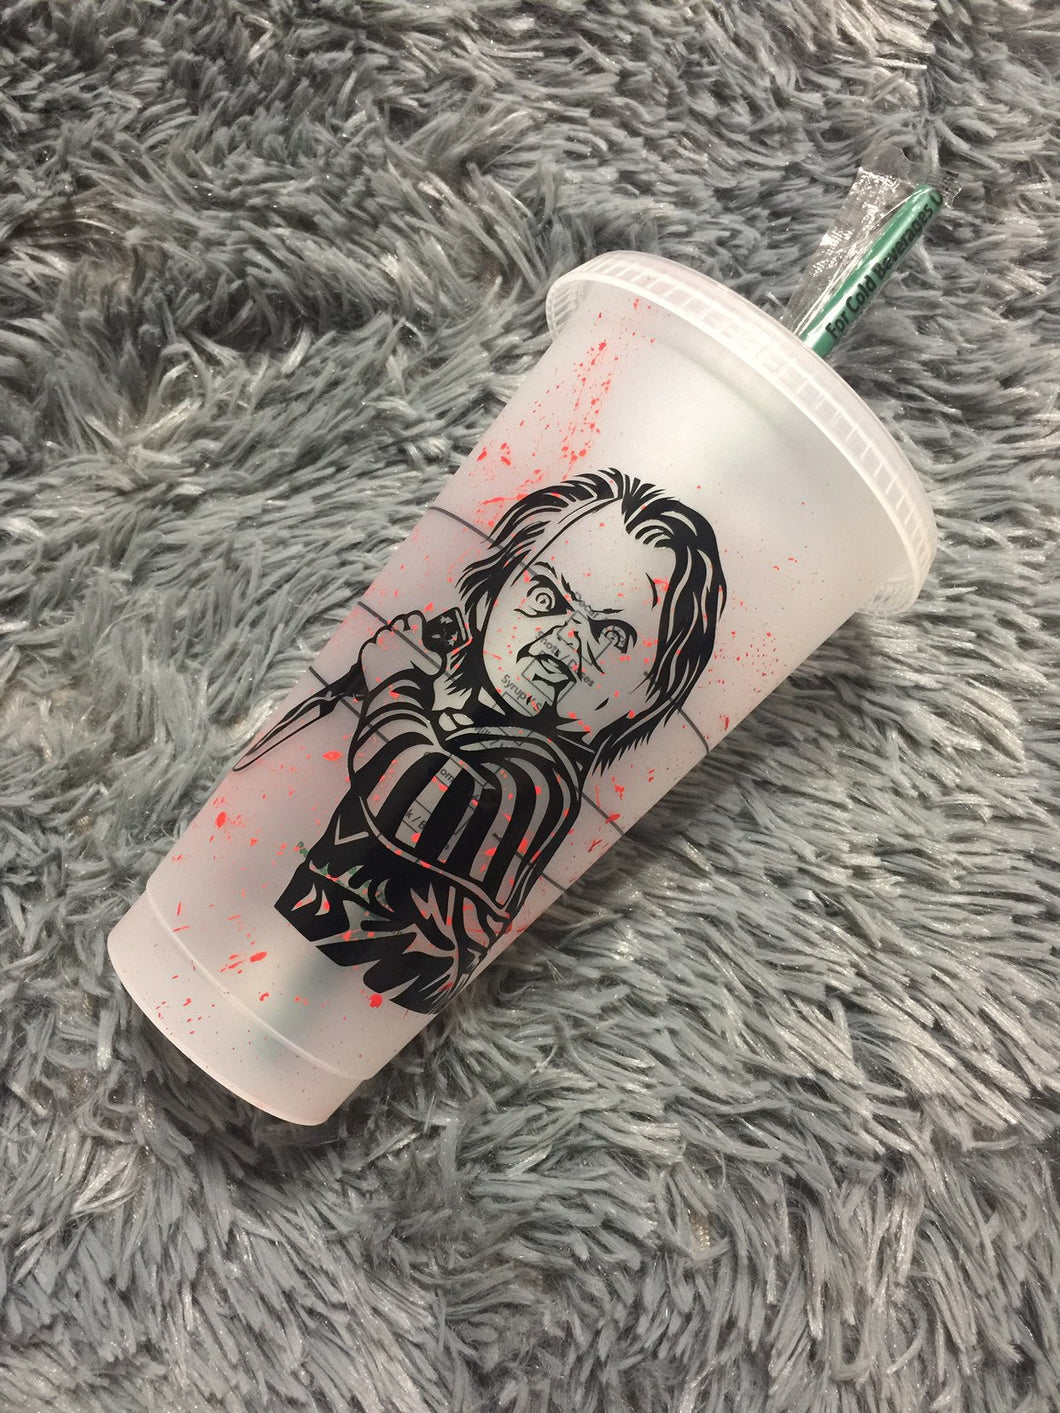 Chucky Starbucks reusable cold cup